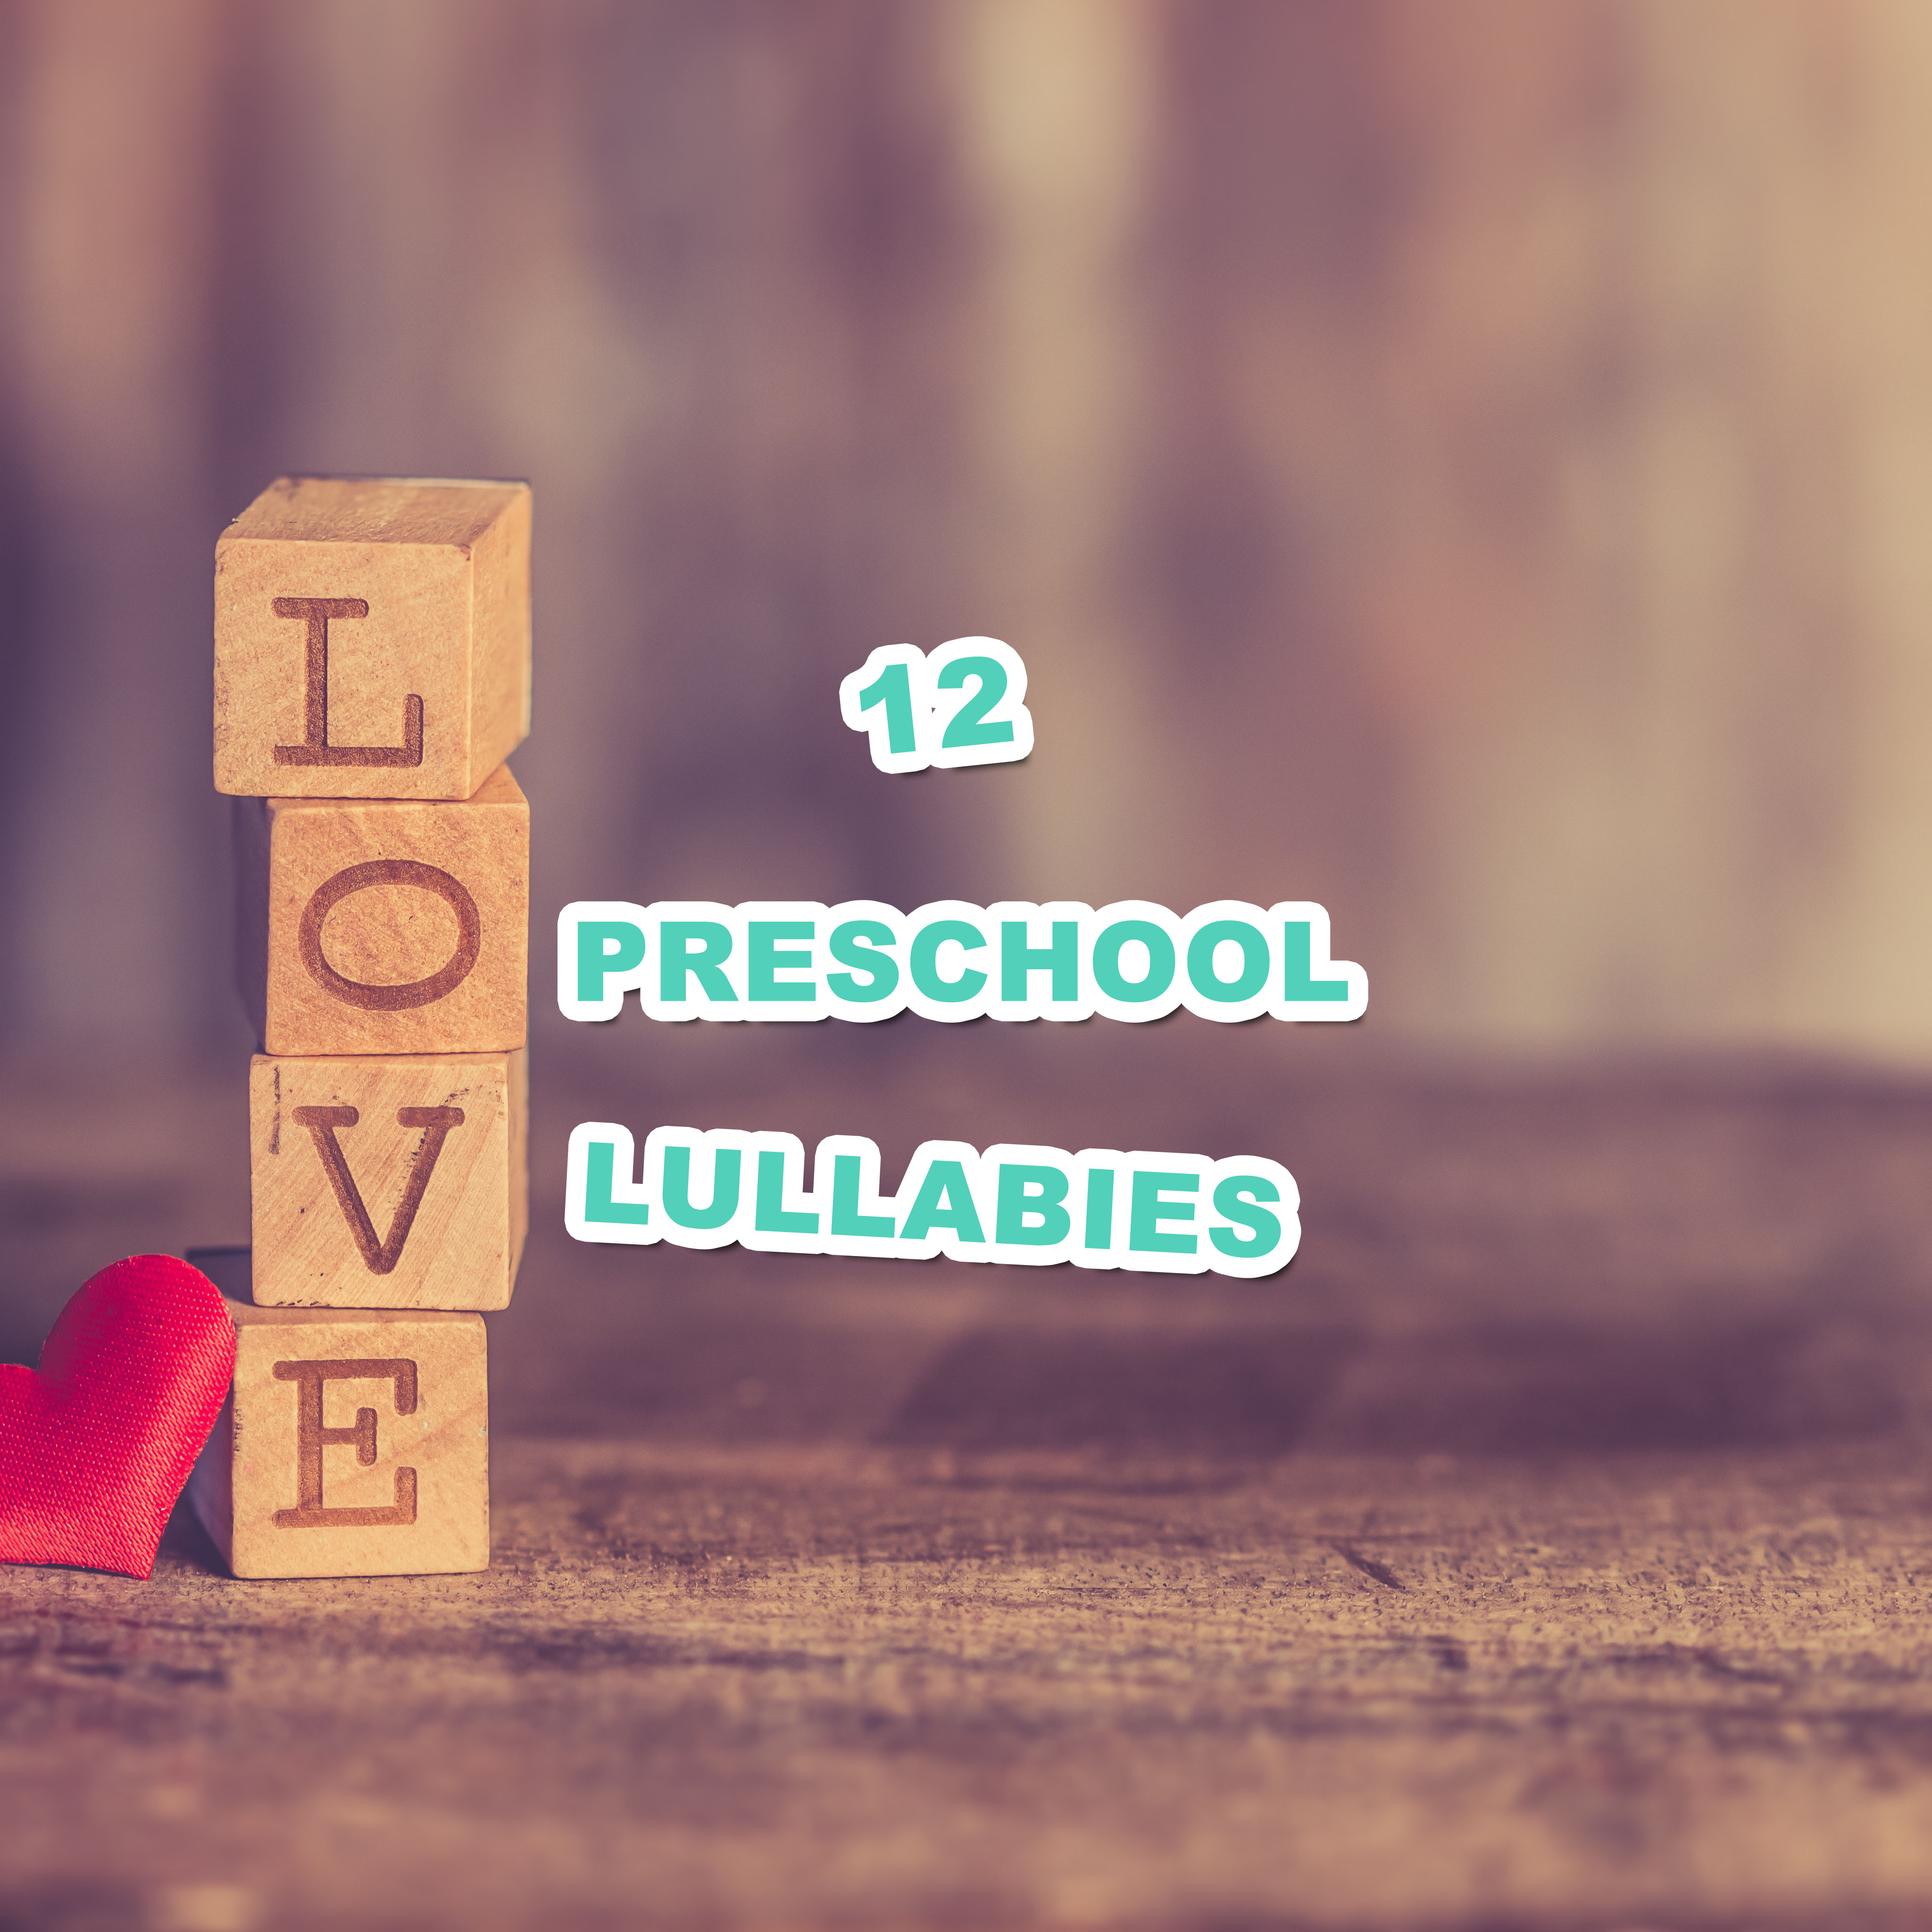 12 Preschool Lullabies